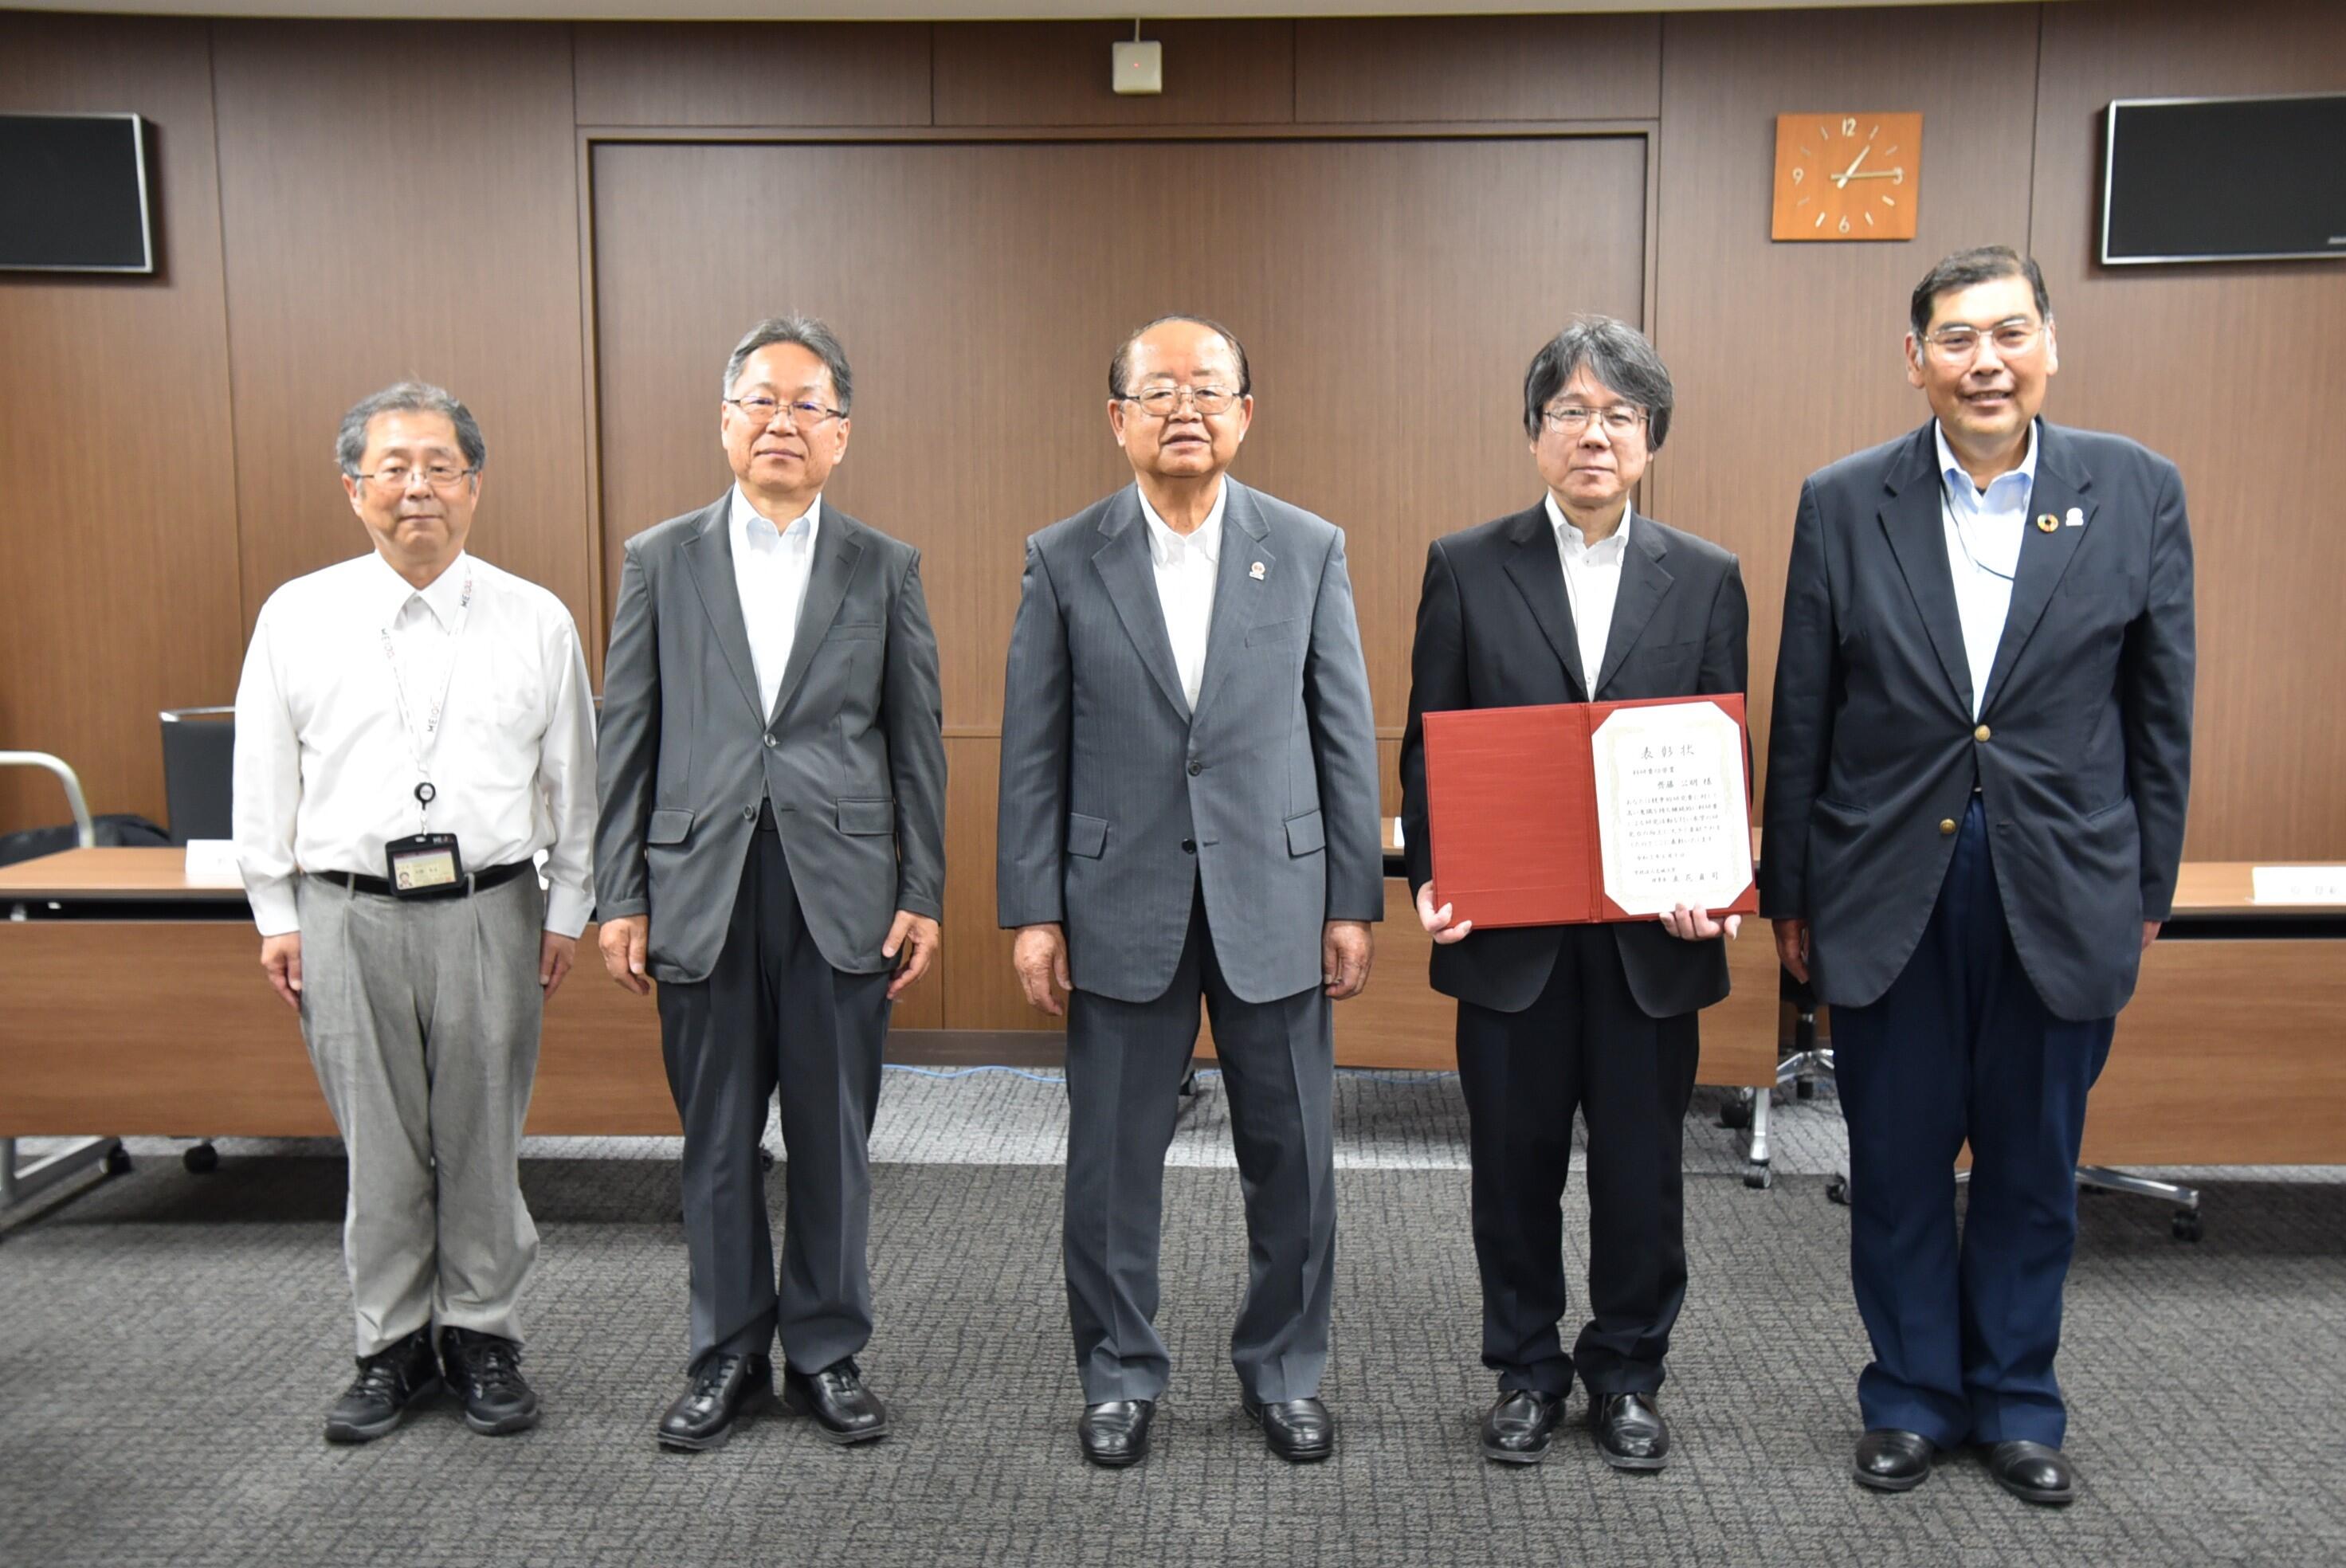 功労賞を受賞した齊藤教授（右から2人目）を囲む小原学長や立花理事長ら